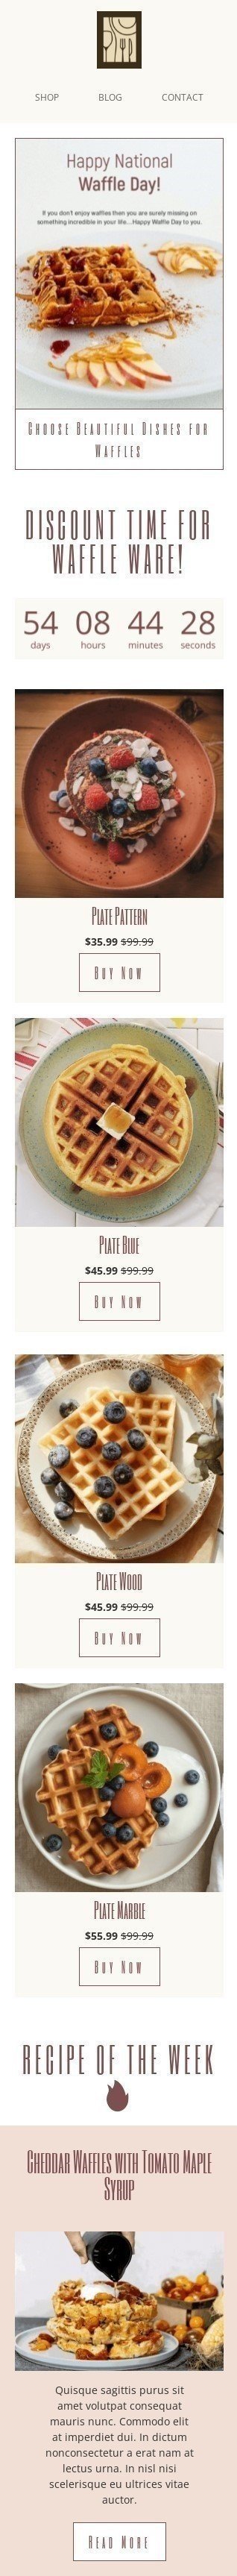 Modelo de E-mail de «Escolha belos pratos para waffles» de Dia Nacional do Waffle para a indústria de Móveis, Decoração e DIY Visualização de dispositivo móvel